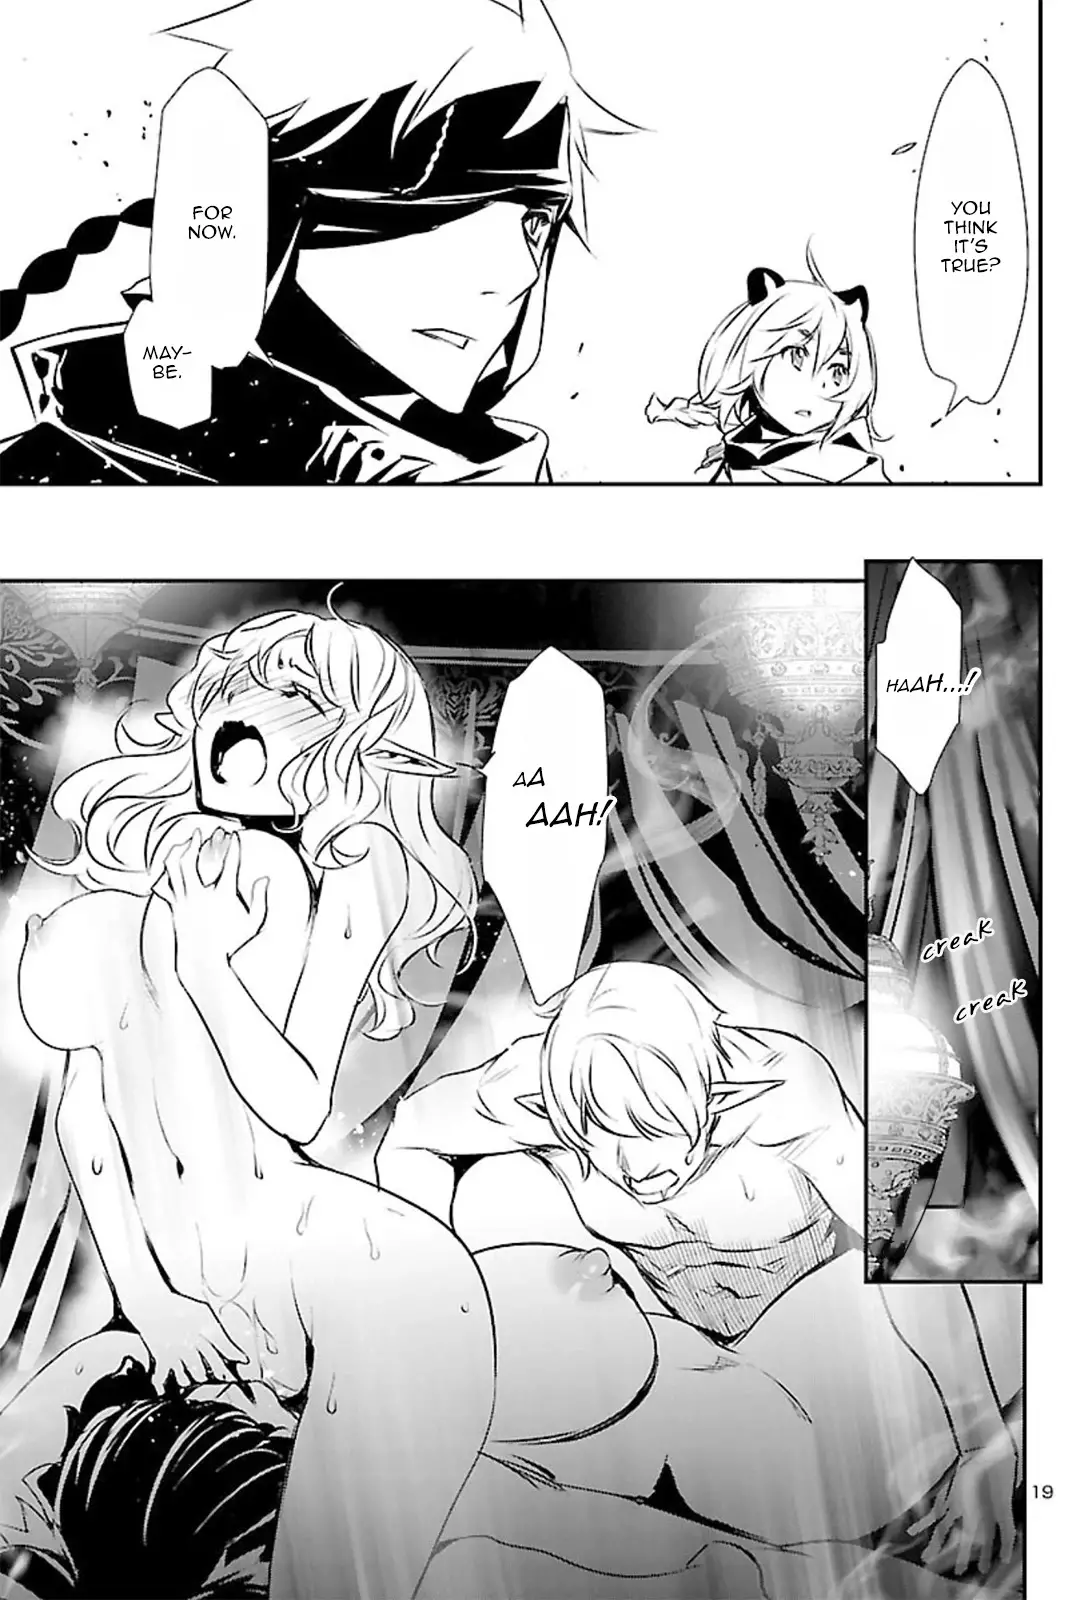 Shinju no Nectar - 51 page 23